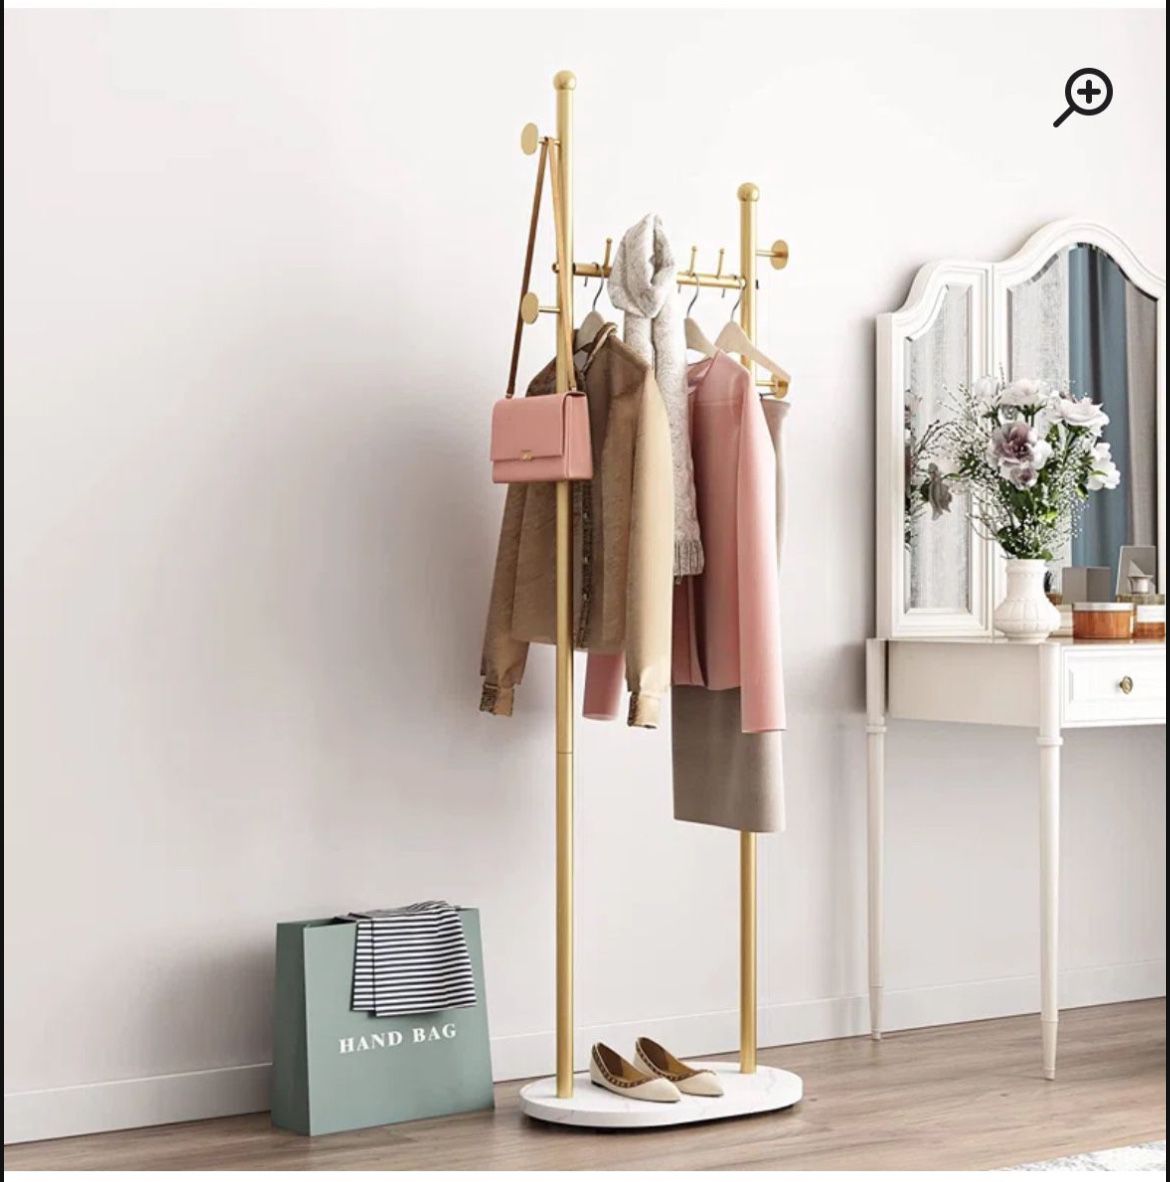 Coat/clothes  rack 